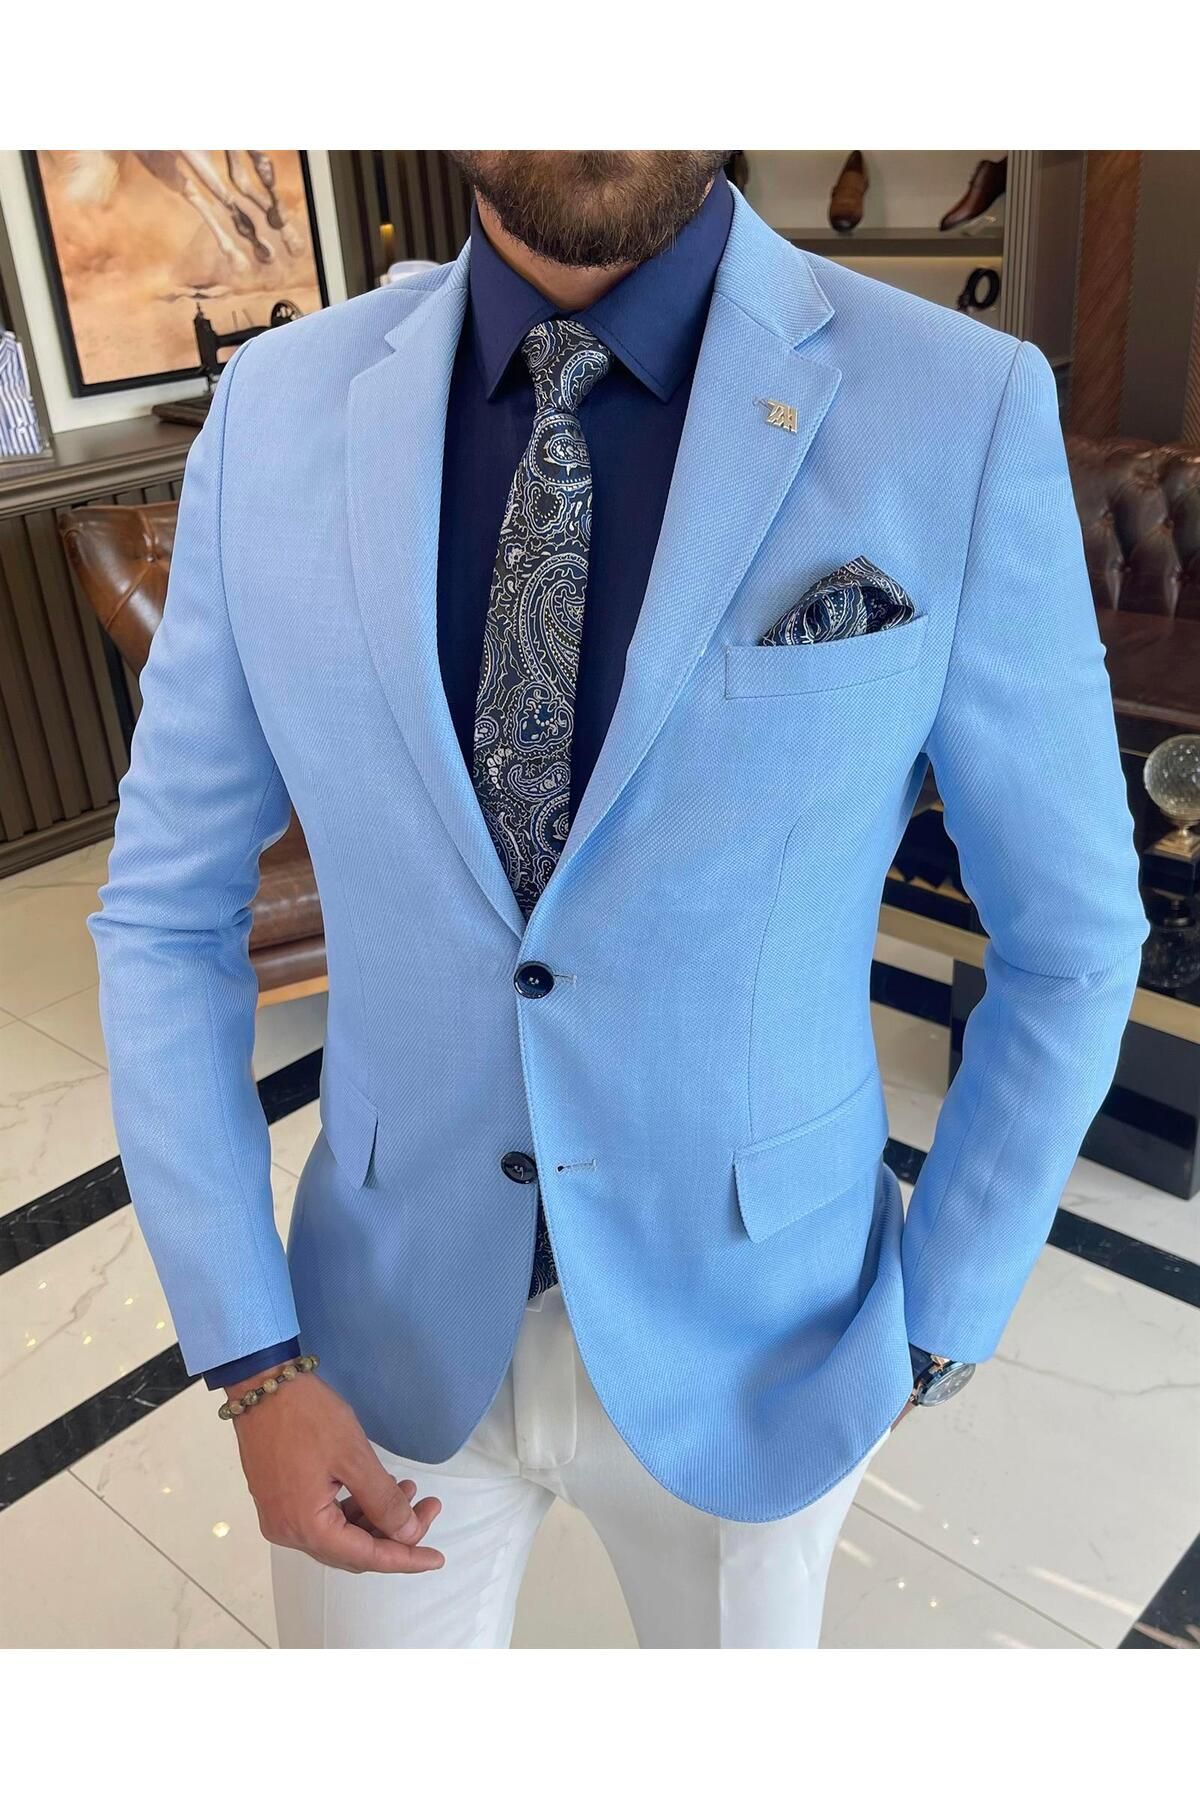 TerziAdemAltun İtalyan Stil Erkek Slim Fit Mono Yaka Pamuk Karışımlı Ceket Mavi T9335